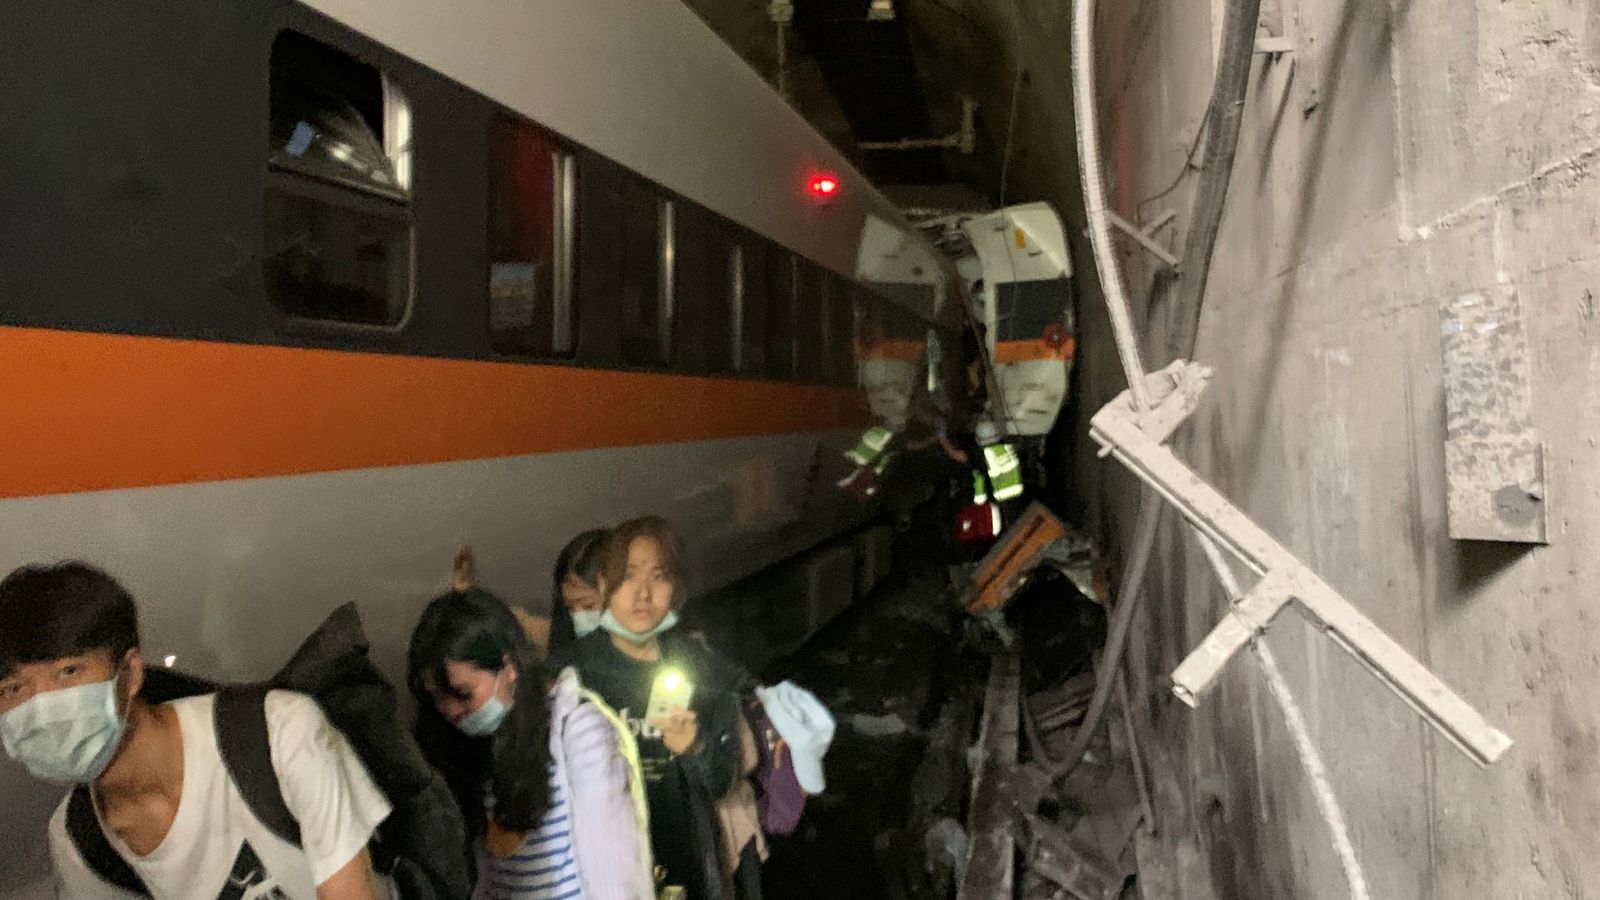 Train derails in Taiwan, kills at 36 people